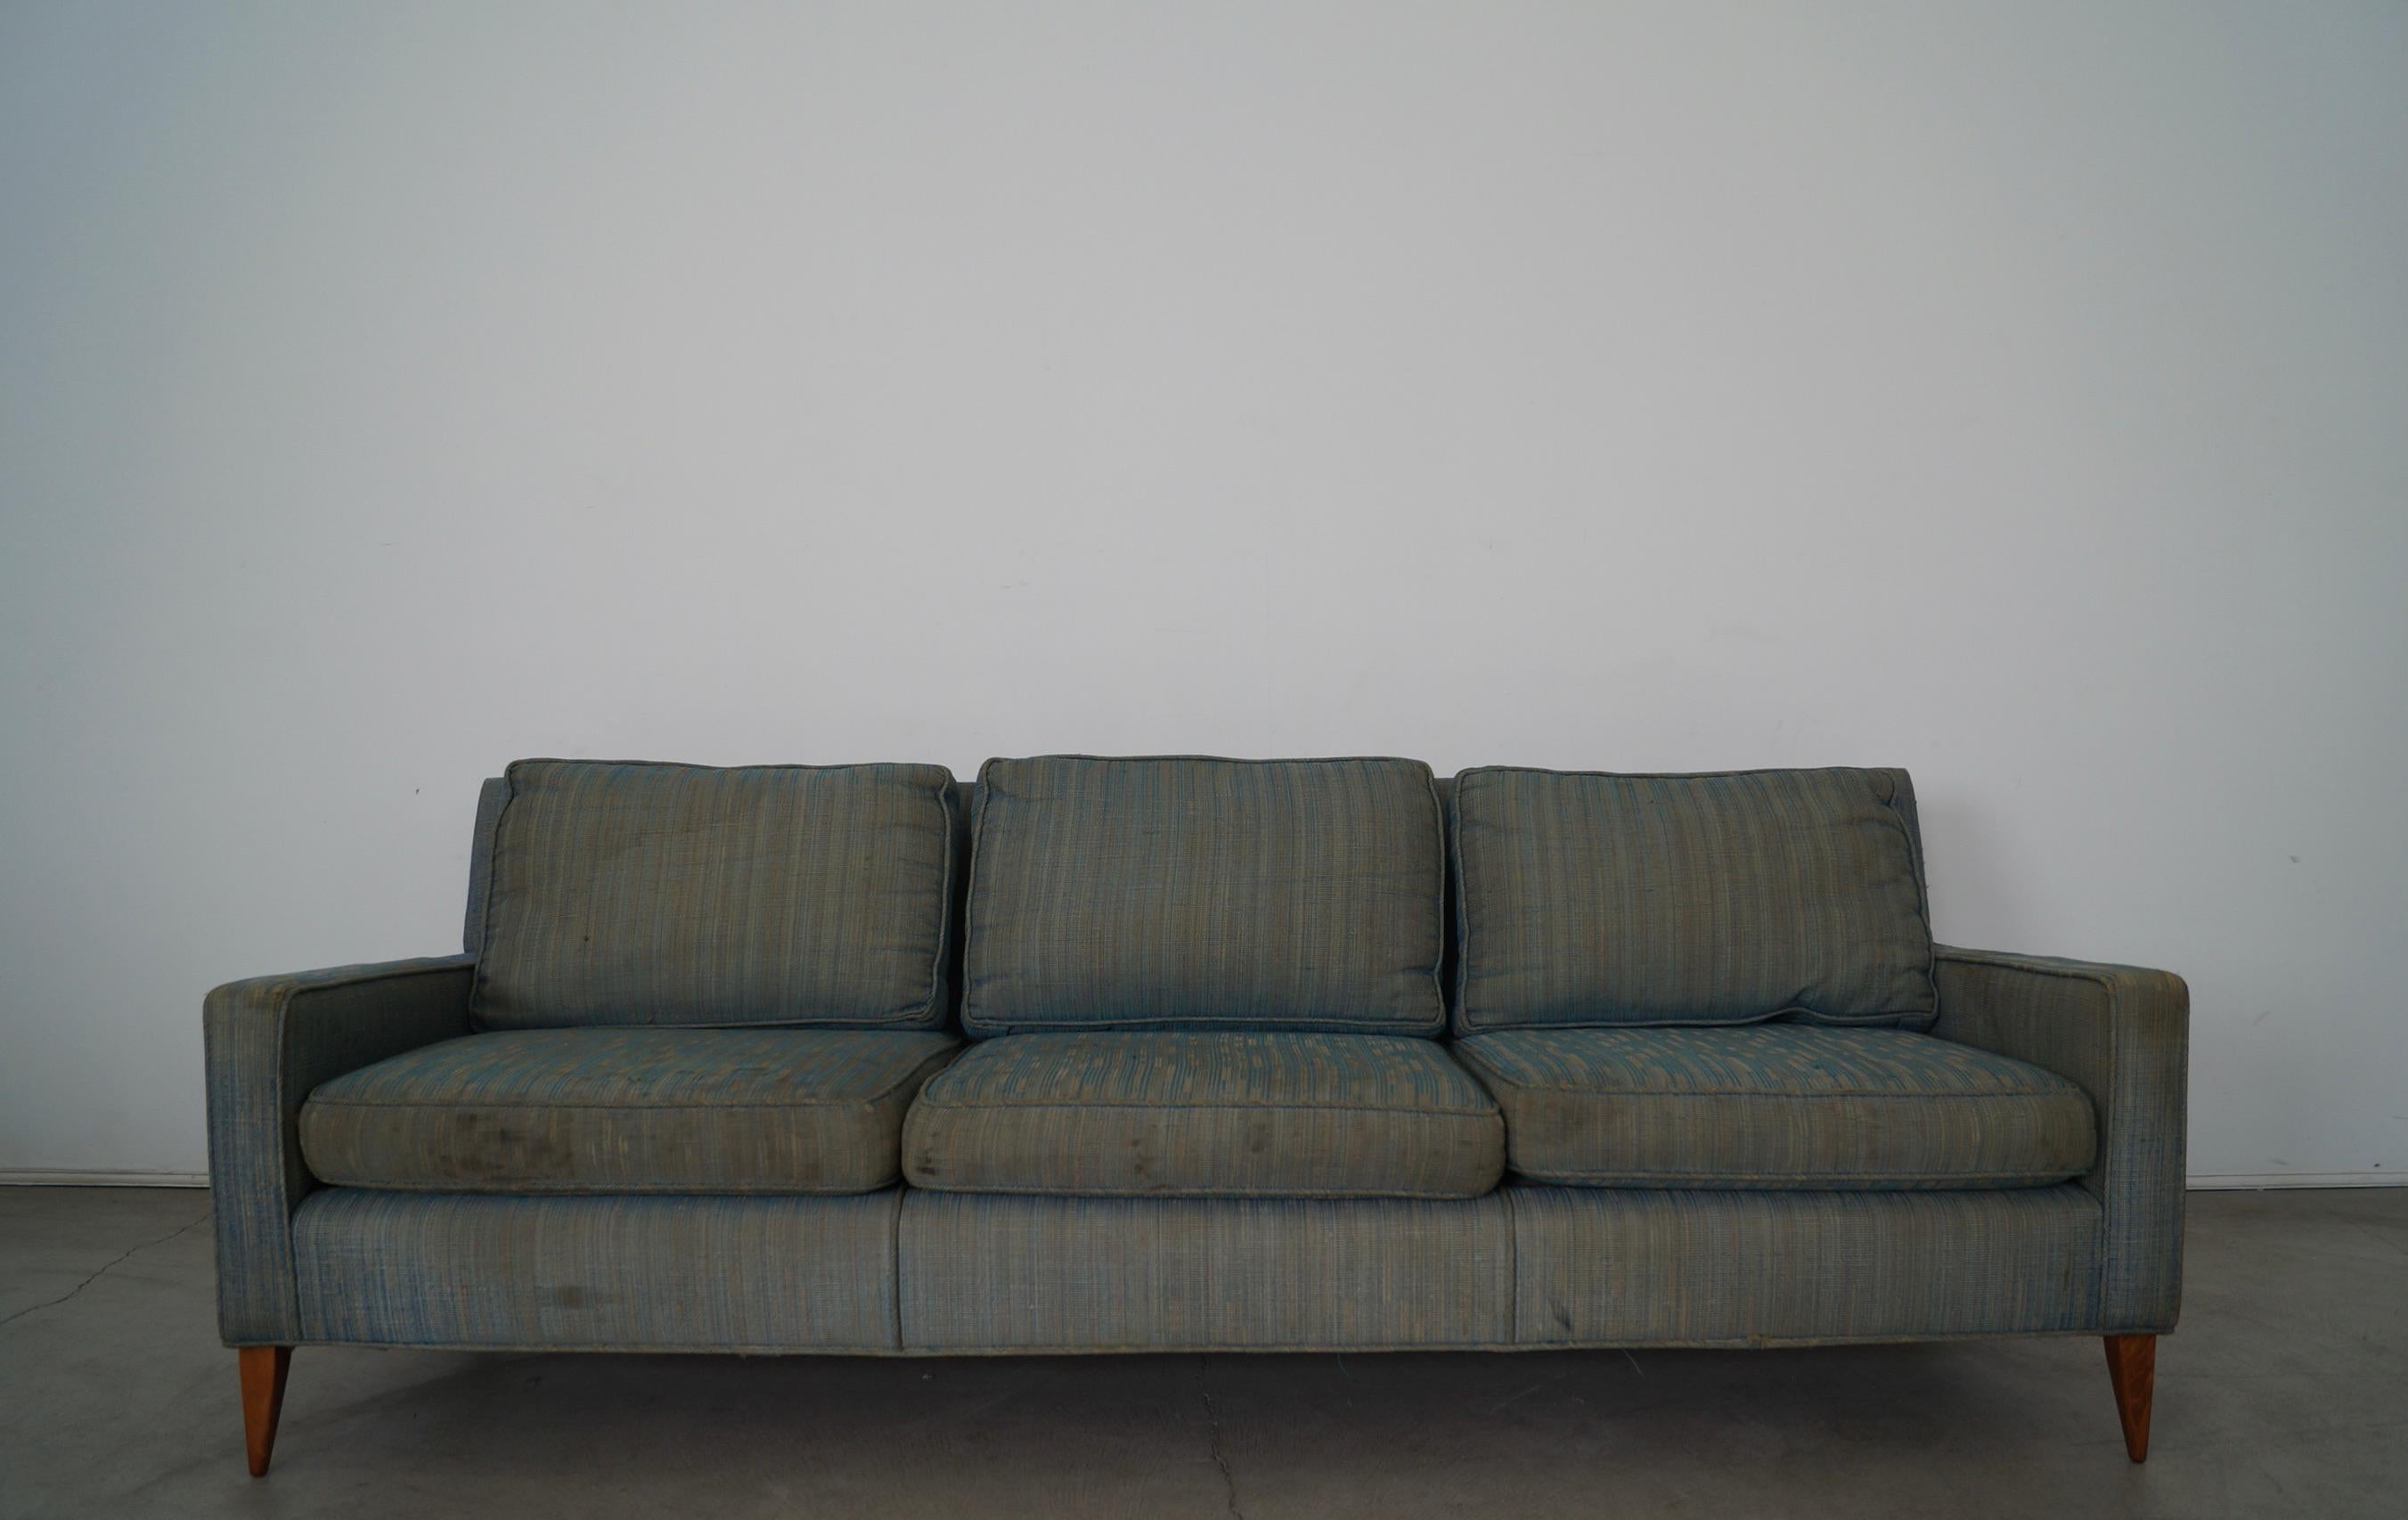 Vintage Mid-Century Modern Couch zu verkaufen. Es wurde in den 1950er Jahren hergestellt und ist ein Originalstück von Paul McCobb mit dem Originalstoff. Es muss neu gepolstert werden. Wir haben die Beine neu lackiert und brauchen jetzt nur noch